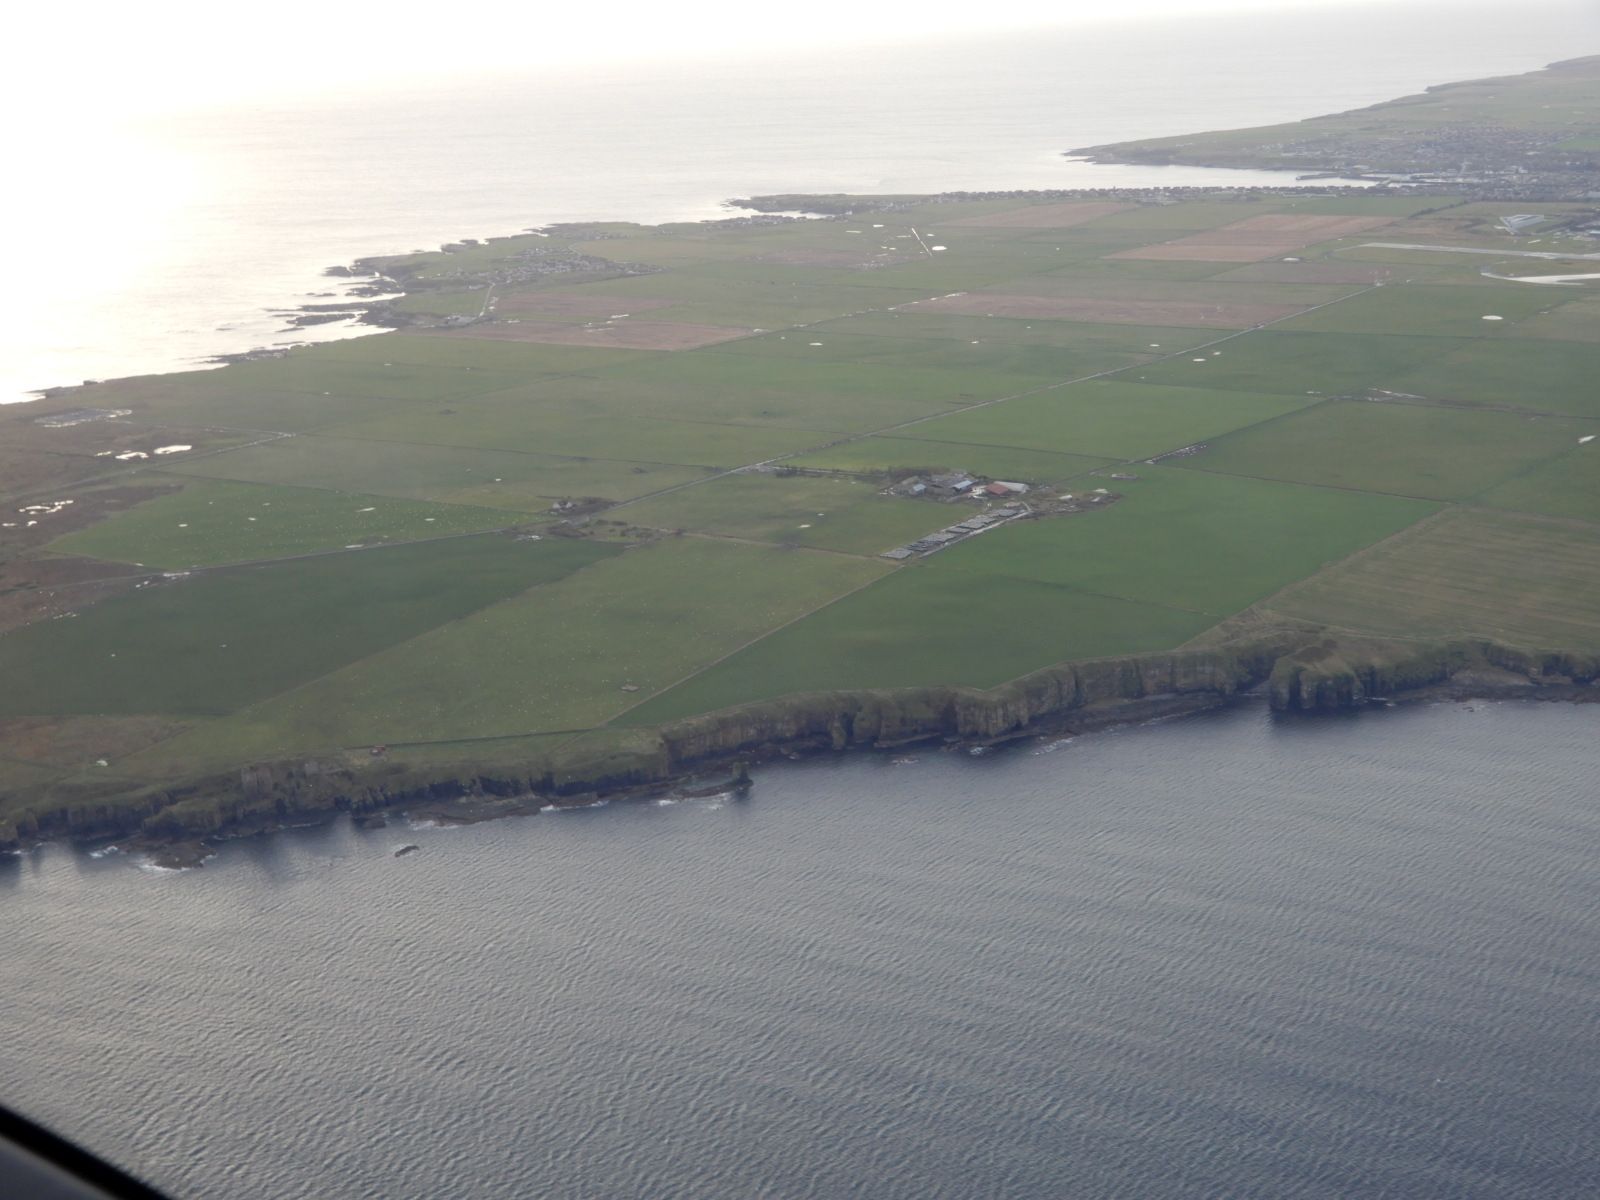 Nejsevernější část Skotska s letištěm Wick (EGPC). Tolik vytoužený pohled po nekonečných 4 hodinách letu z islandského Keflaviku.